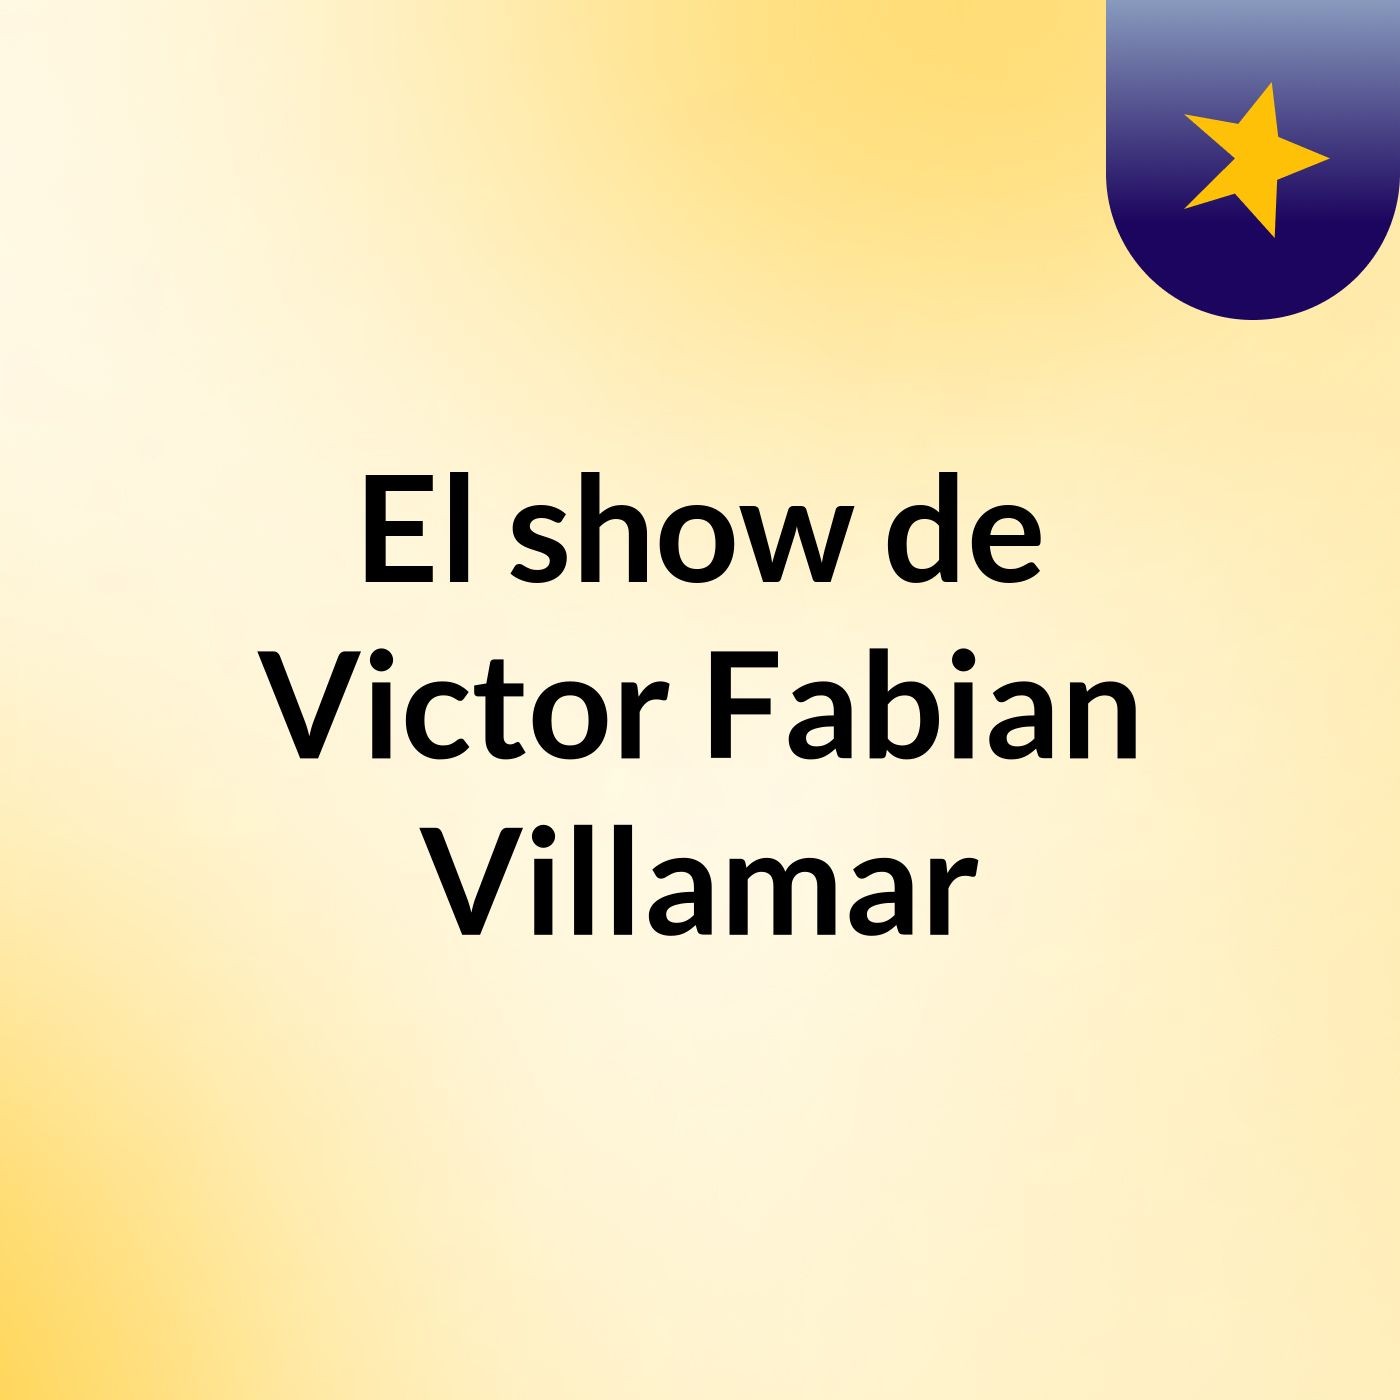 El show de Victor Fabian Villamar